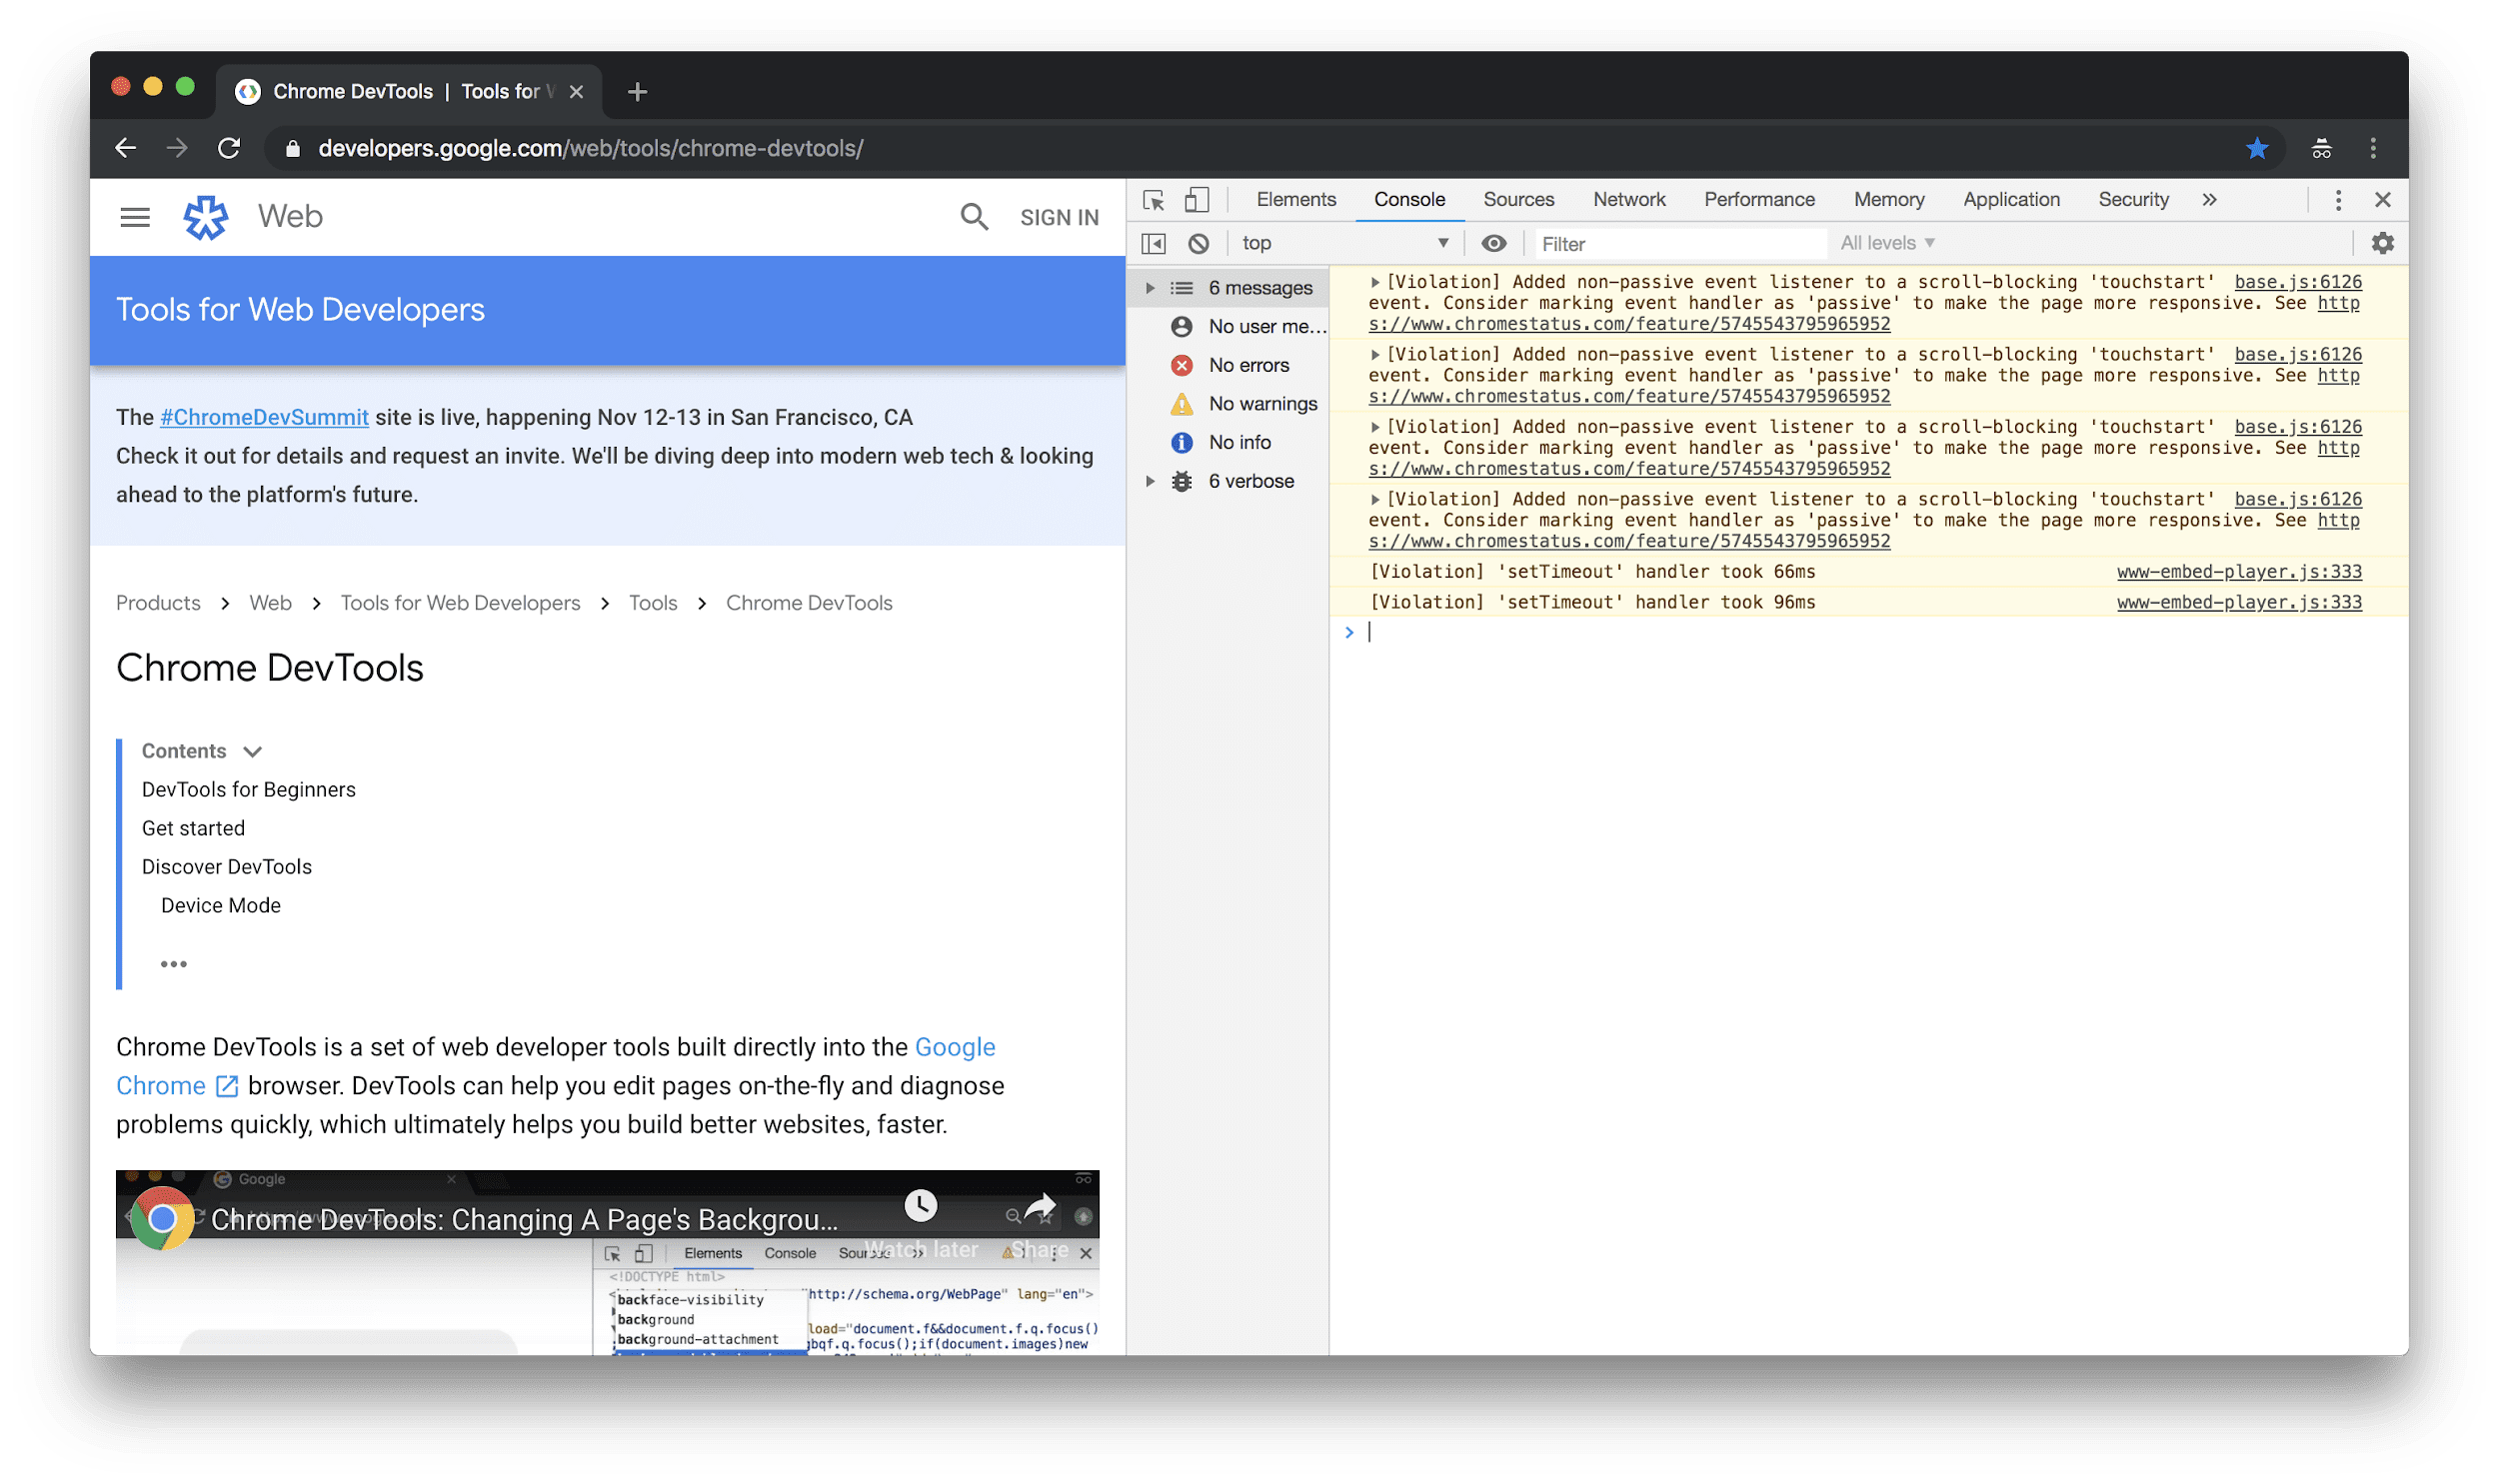 DevTools terbuka dan dipasang ke sisi kanan layar.